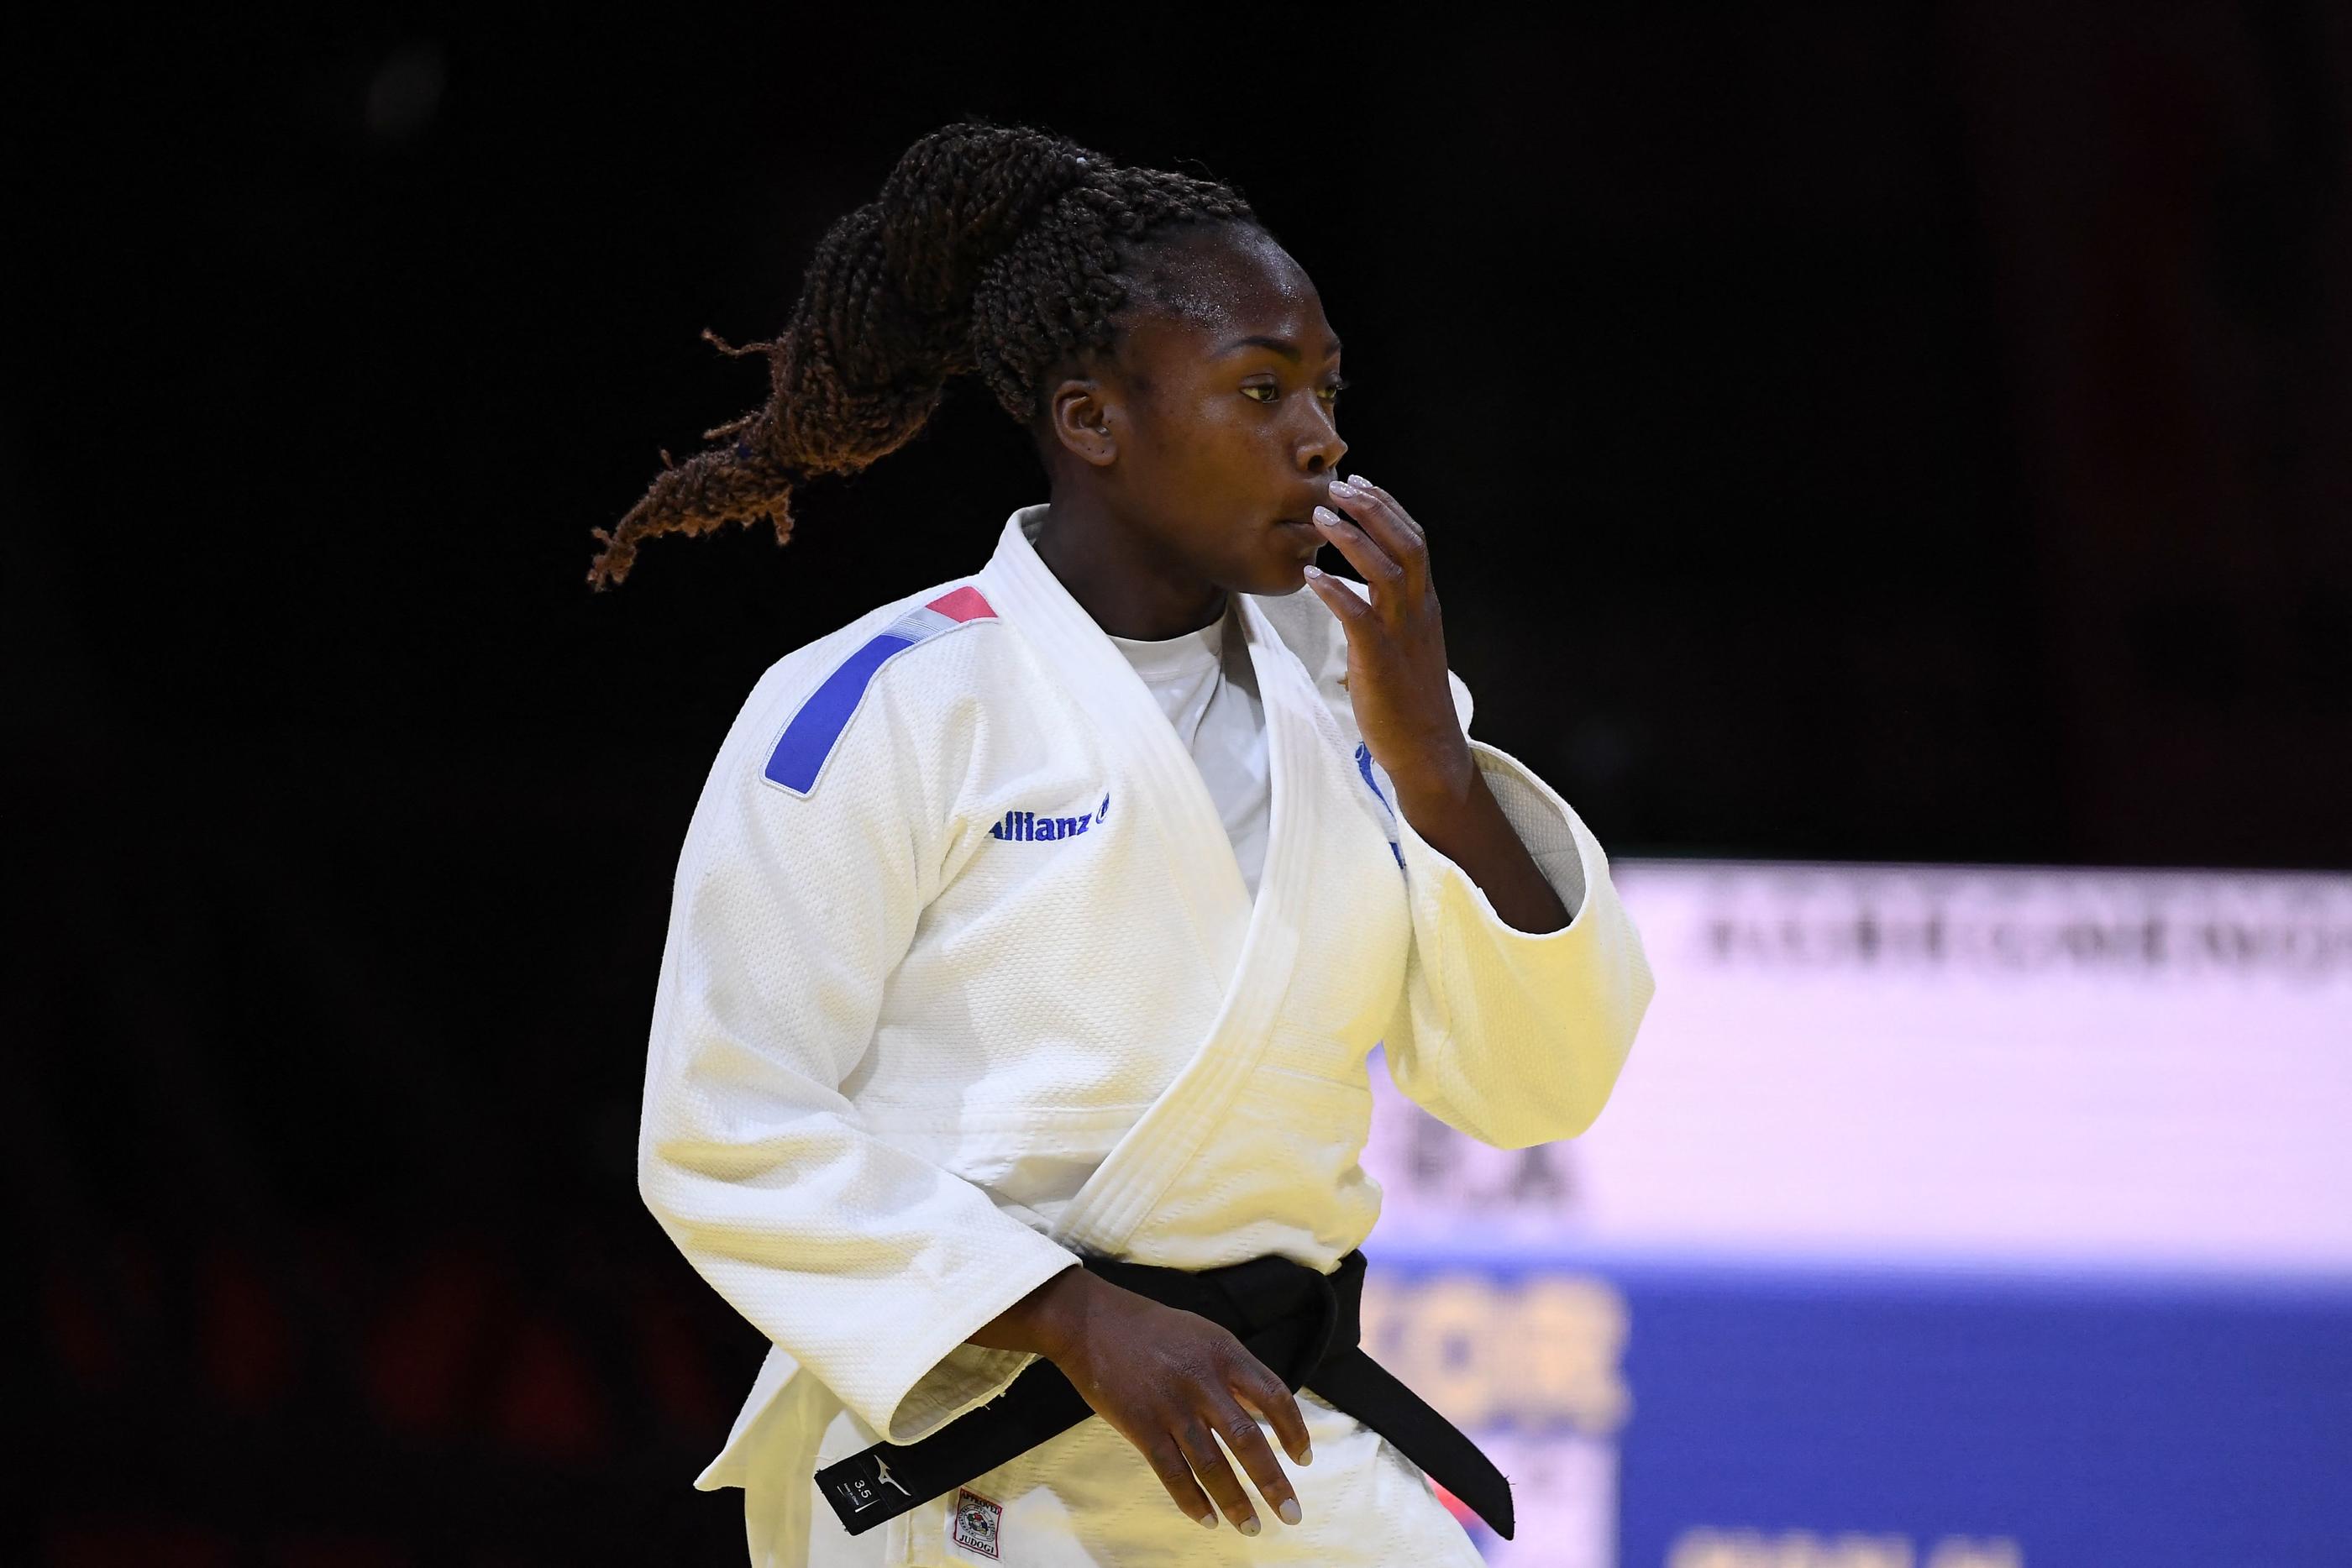 La judokate Clarisse Agbegnenou fait partie des meilleures chances de médailles françaises de ces JO de Tokyo. AFP/Attila Kisbenedek